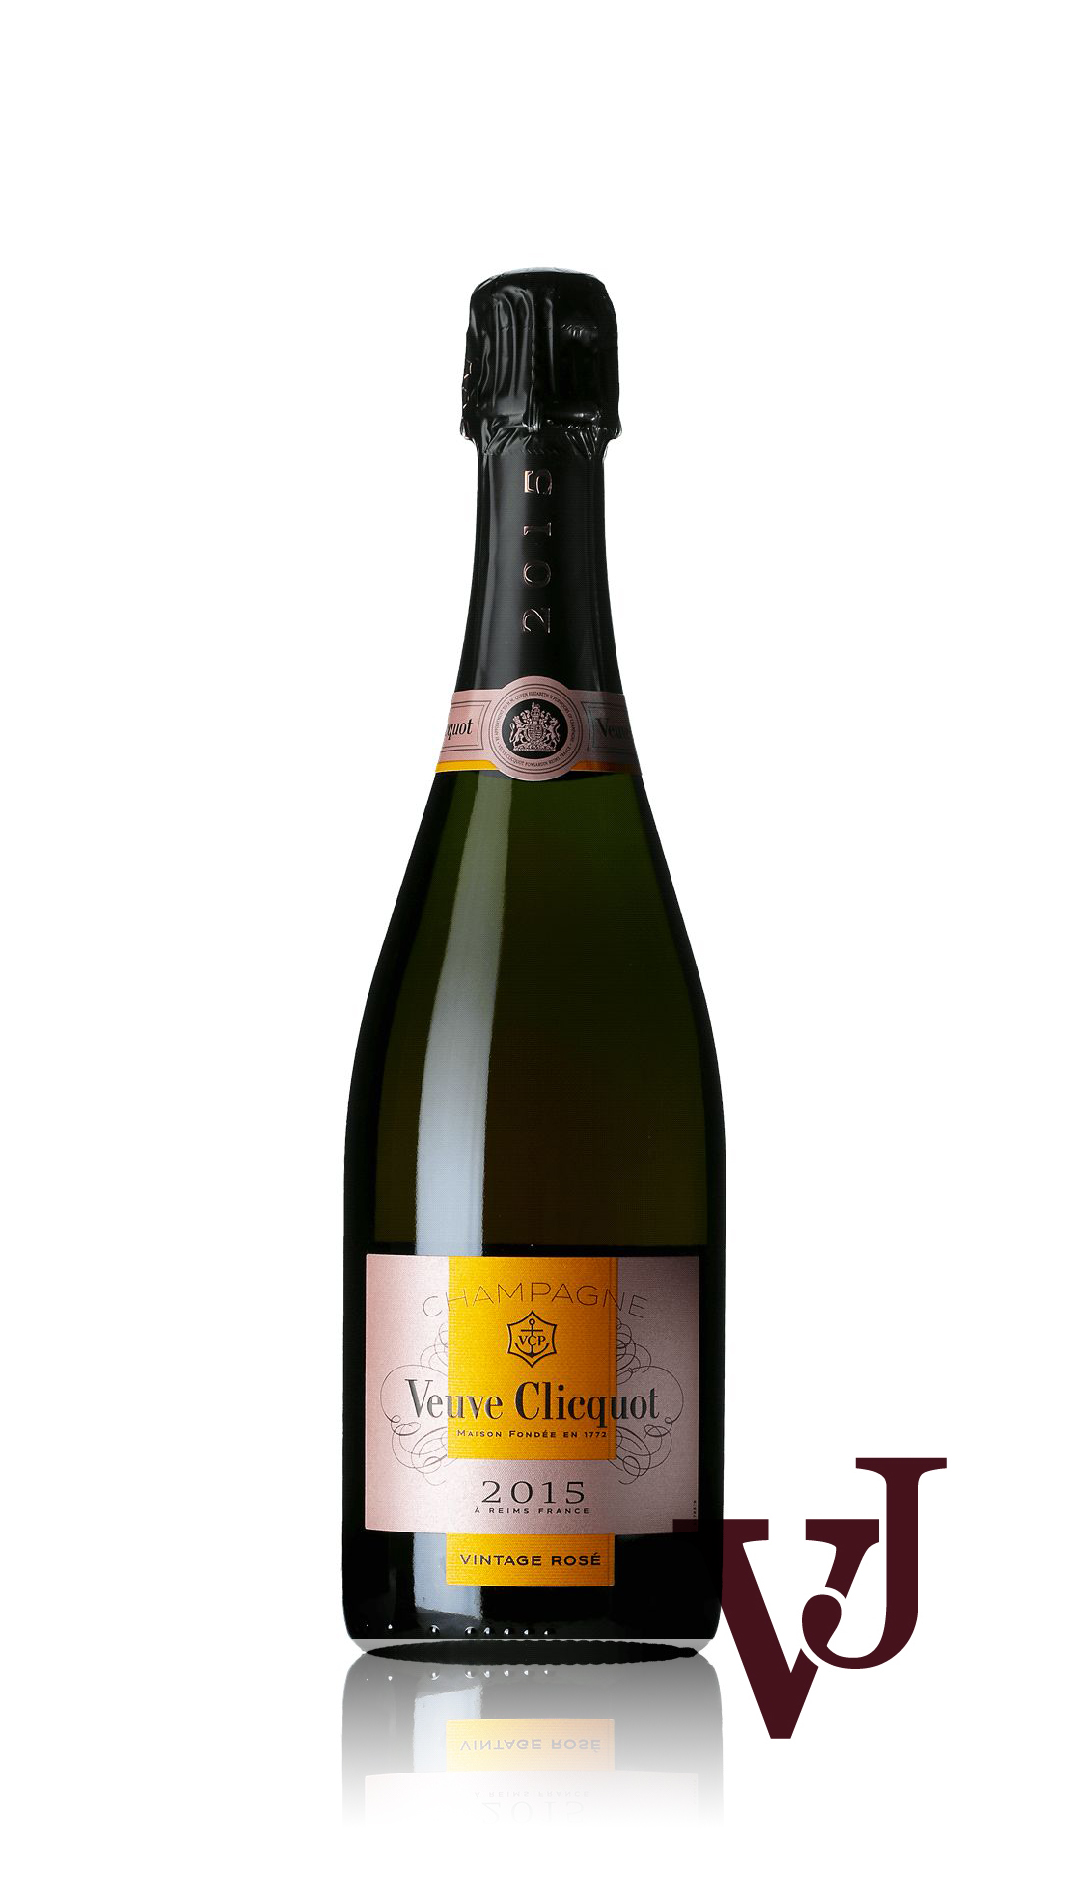 Rosé Vin - Veuve Clicquot Vintage Rosé 2015 artikel nummer 9441801 från producenten Veuve Clicquot från Frankrike